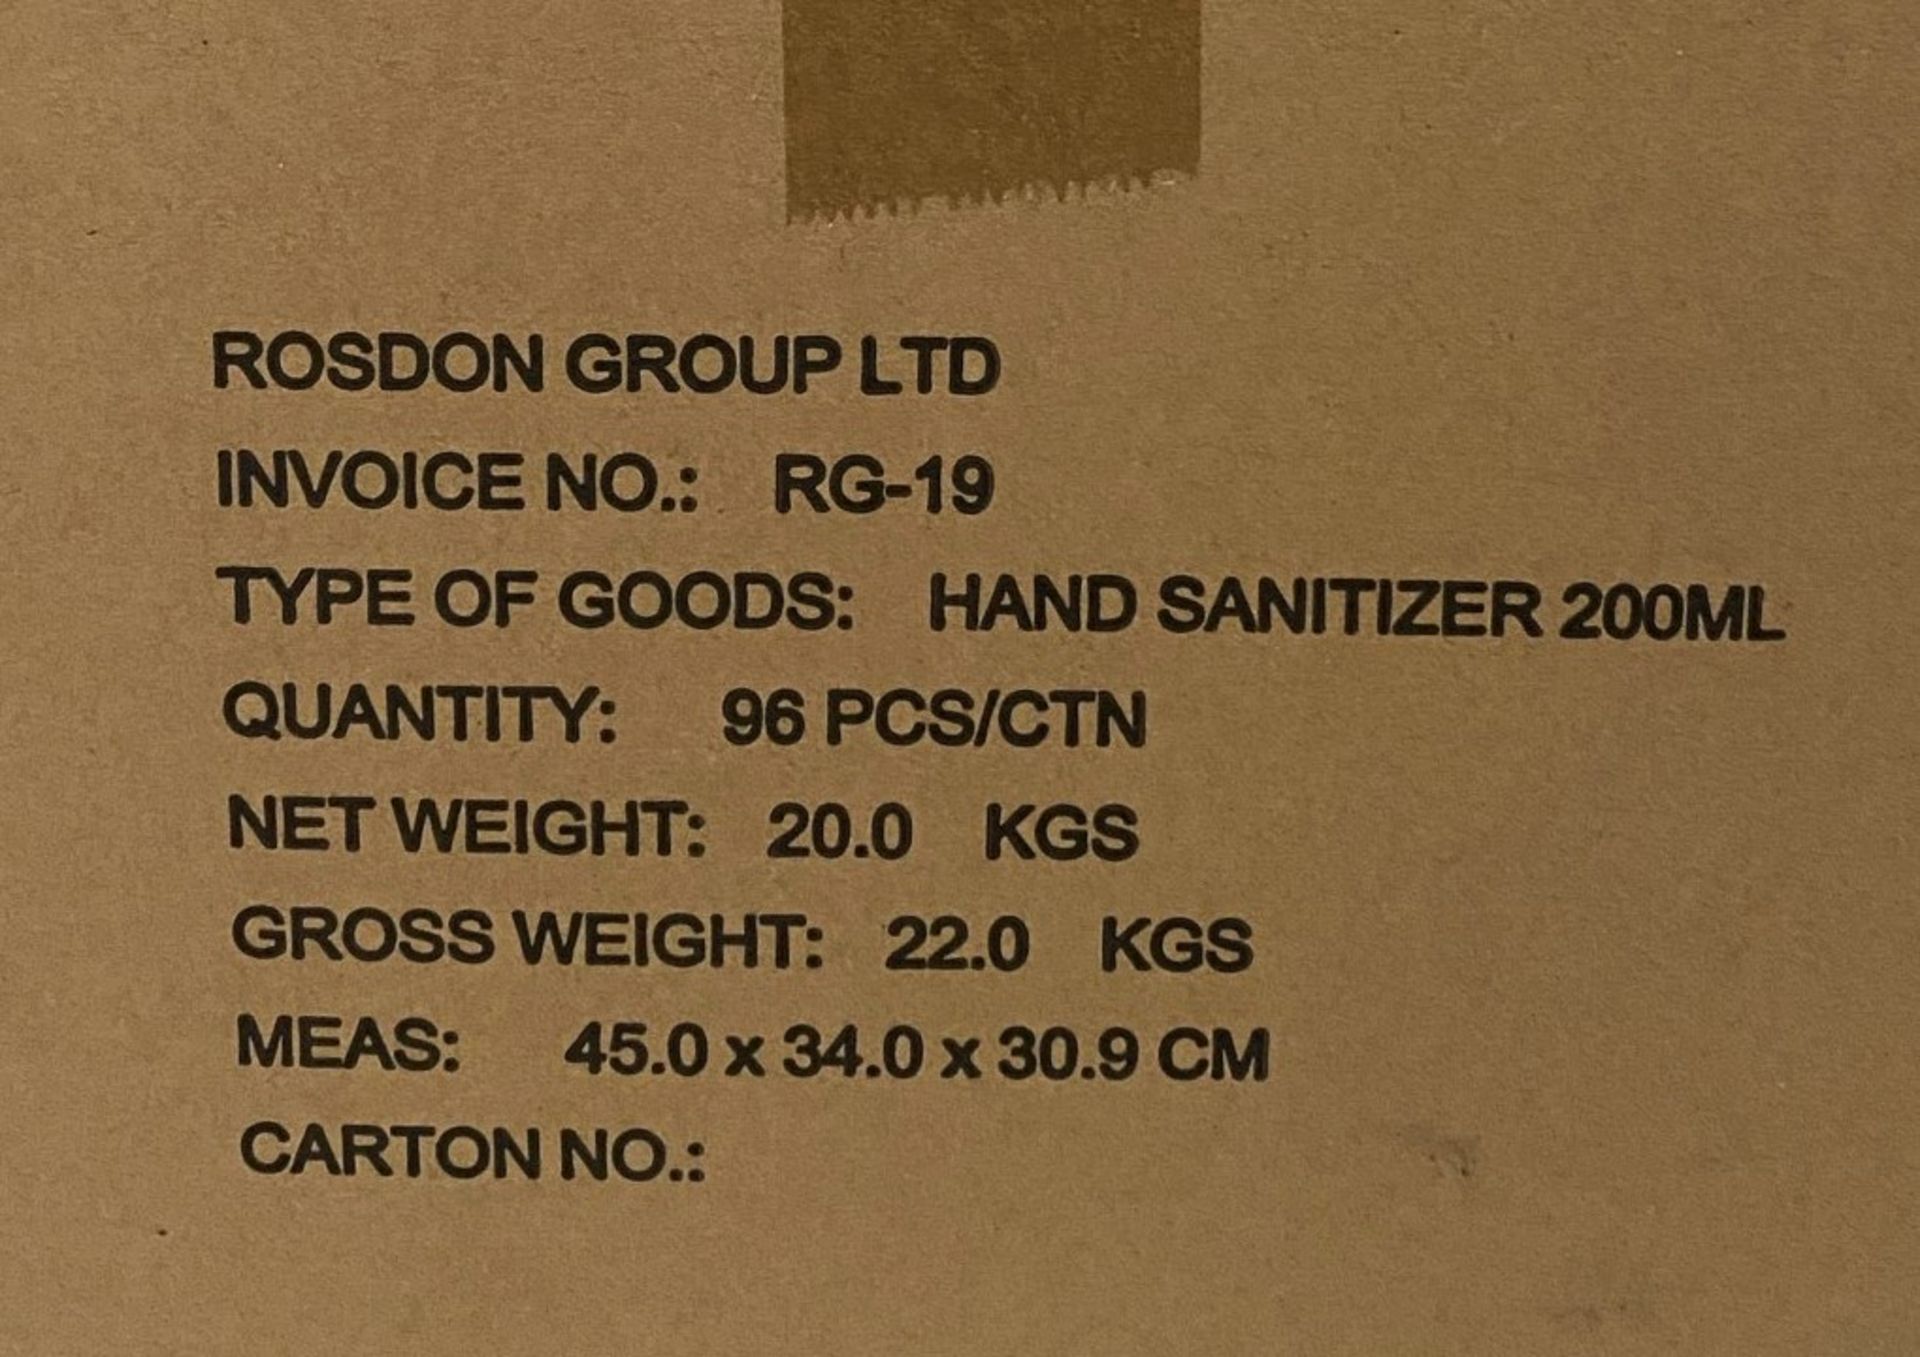 96 x 200ml pump top bottles of Rosdon Group UK hand sanitiser (Unlabelled clear plastic bottles) - - Image 3 of 3